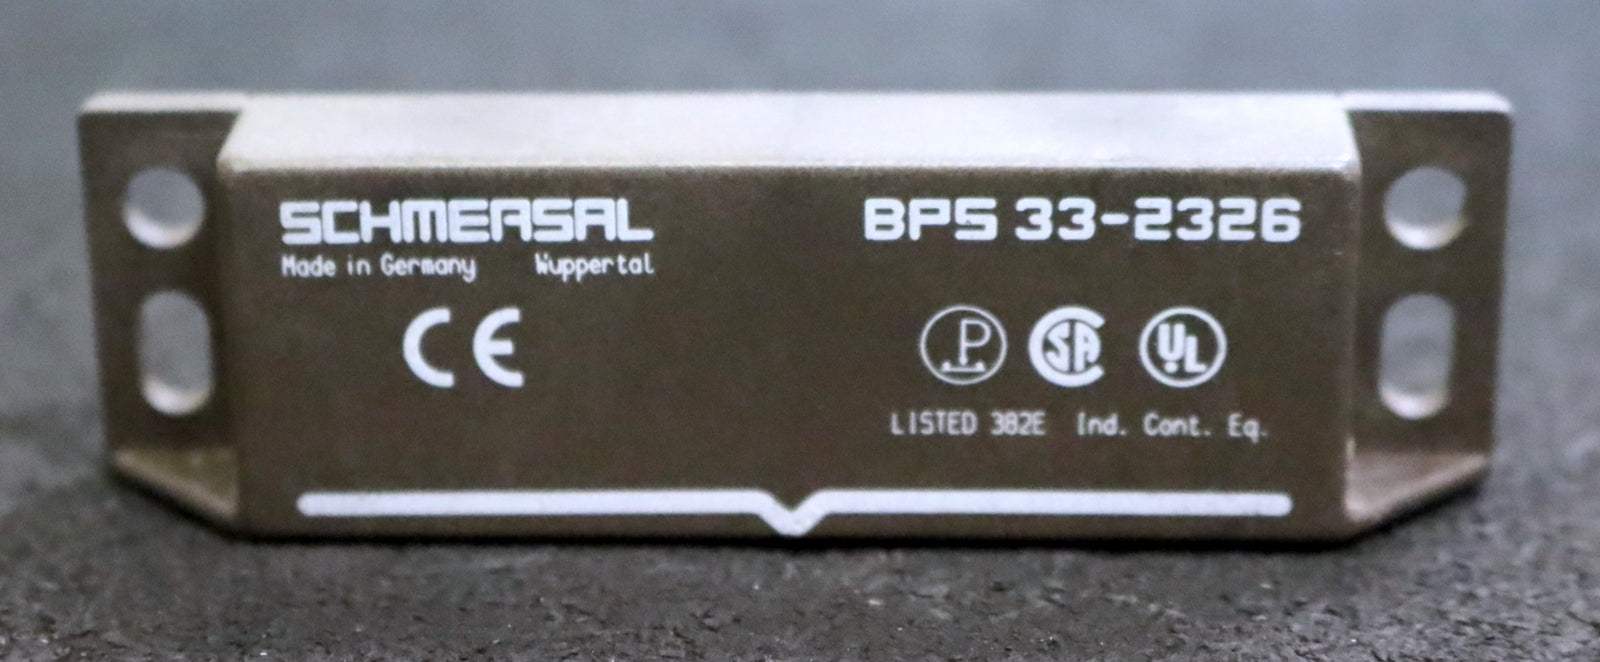 SCHMERSAL Magnetbetätiger BPS 33-2326 unbenutzt